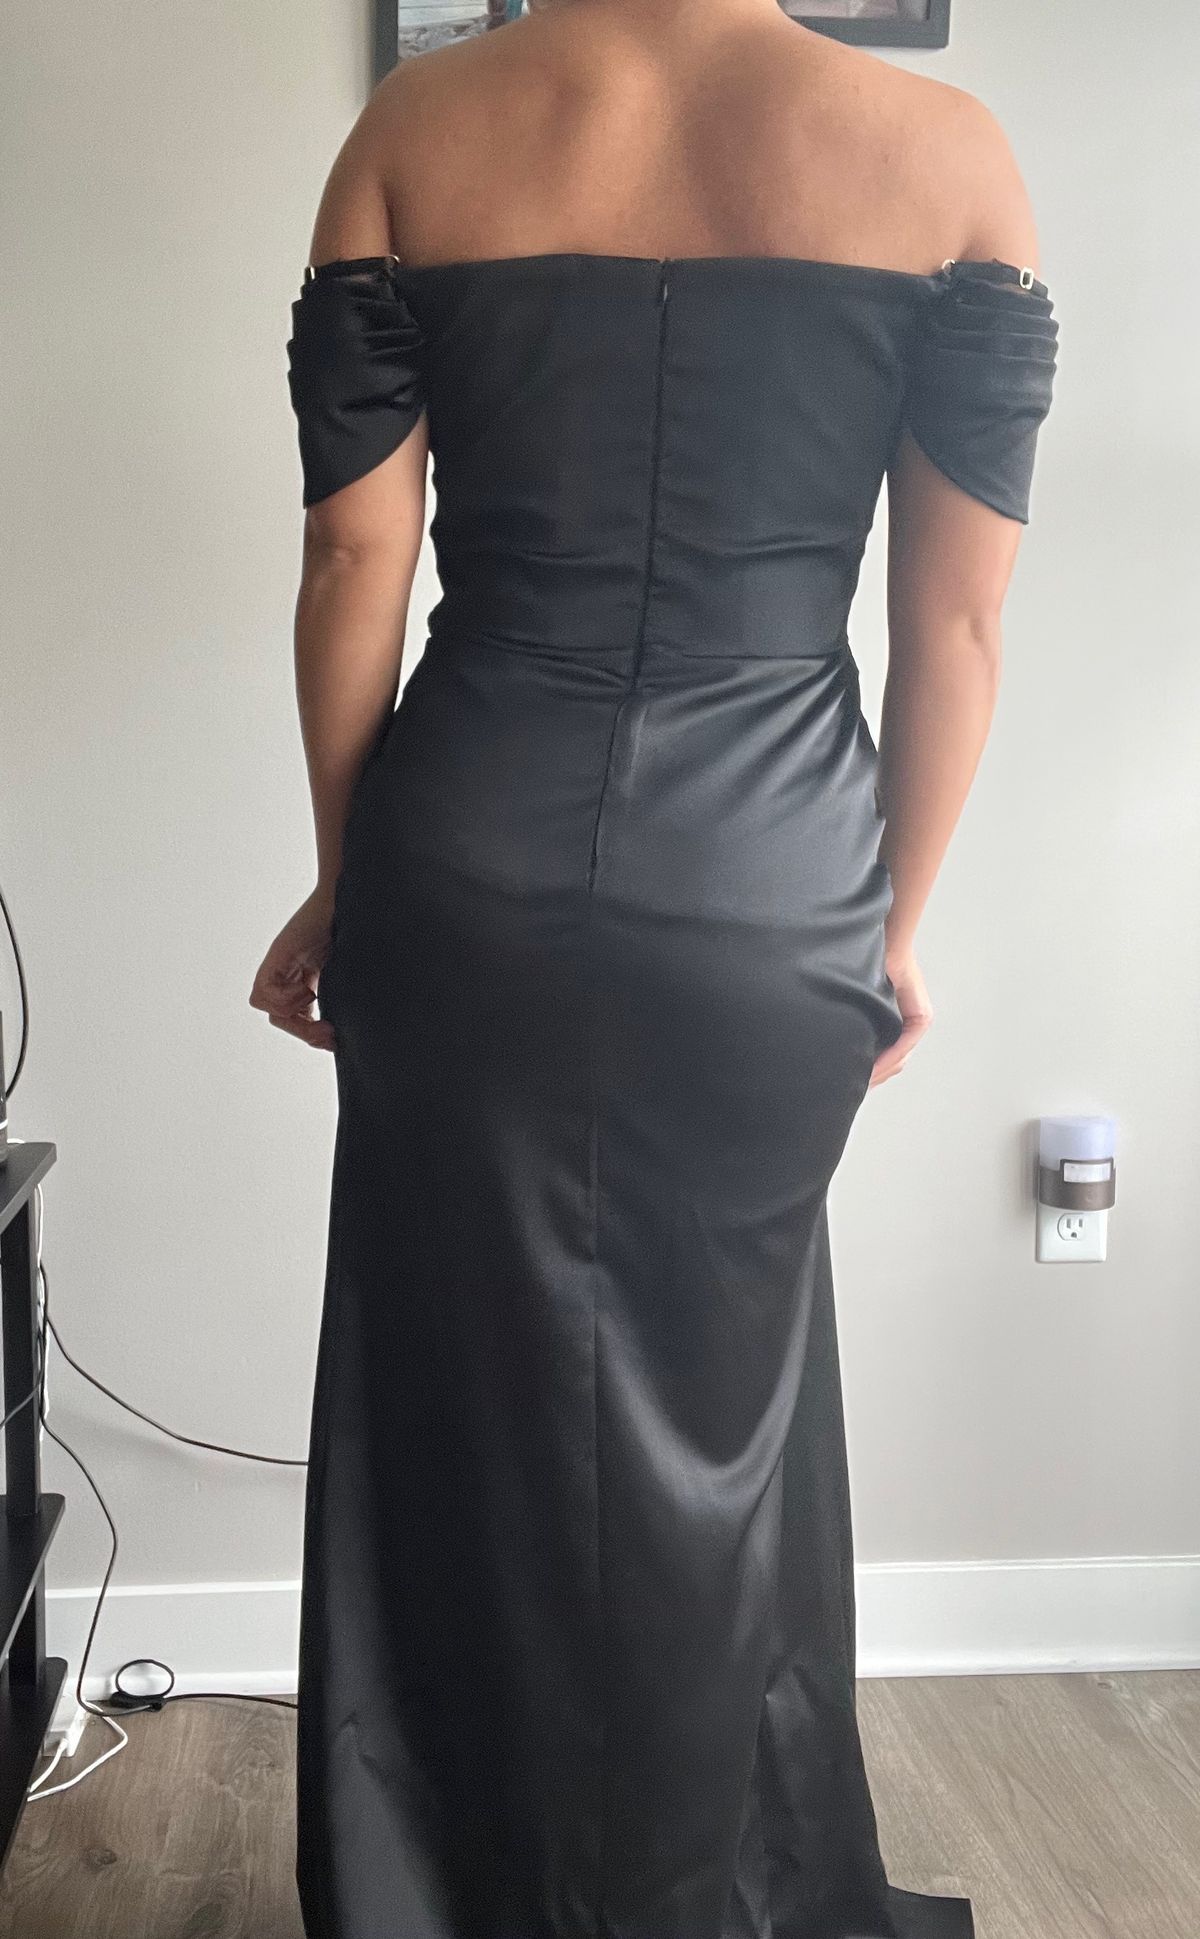 Catwalk Connection Size 8 Prom Off The Shoulder Black Side Slit Dress on Queenly